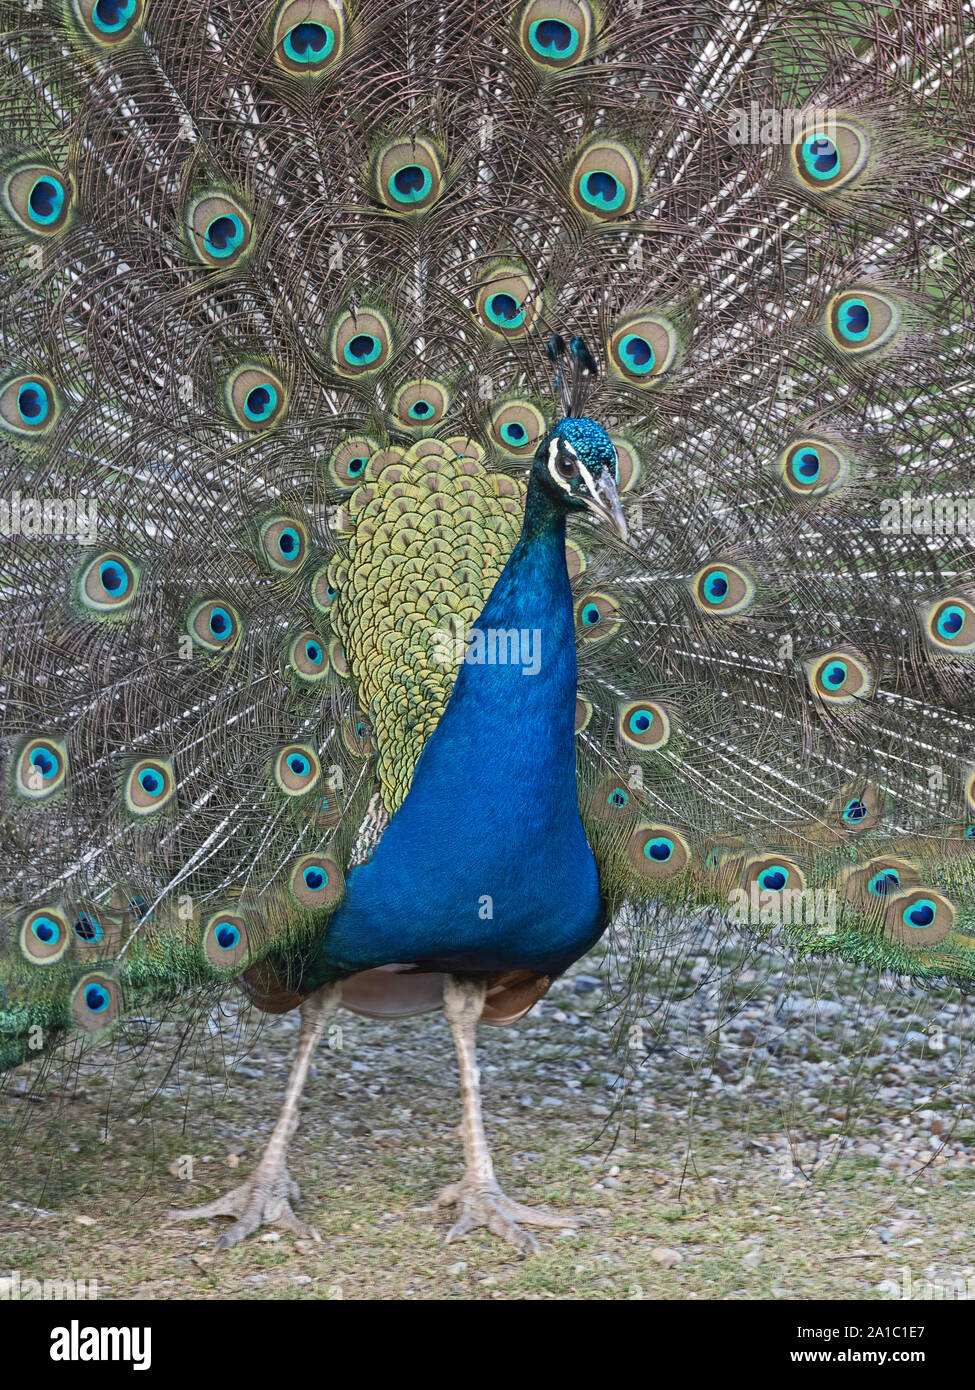 Paons indiens (Peacock) Pavo cristatus mâle en UK d'affichage Banque D'Images